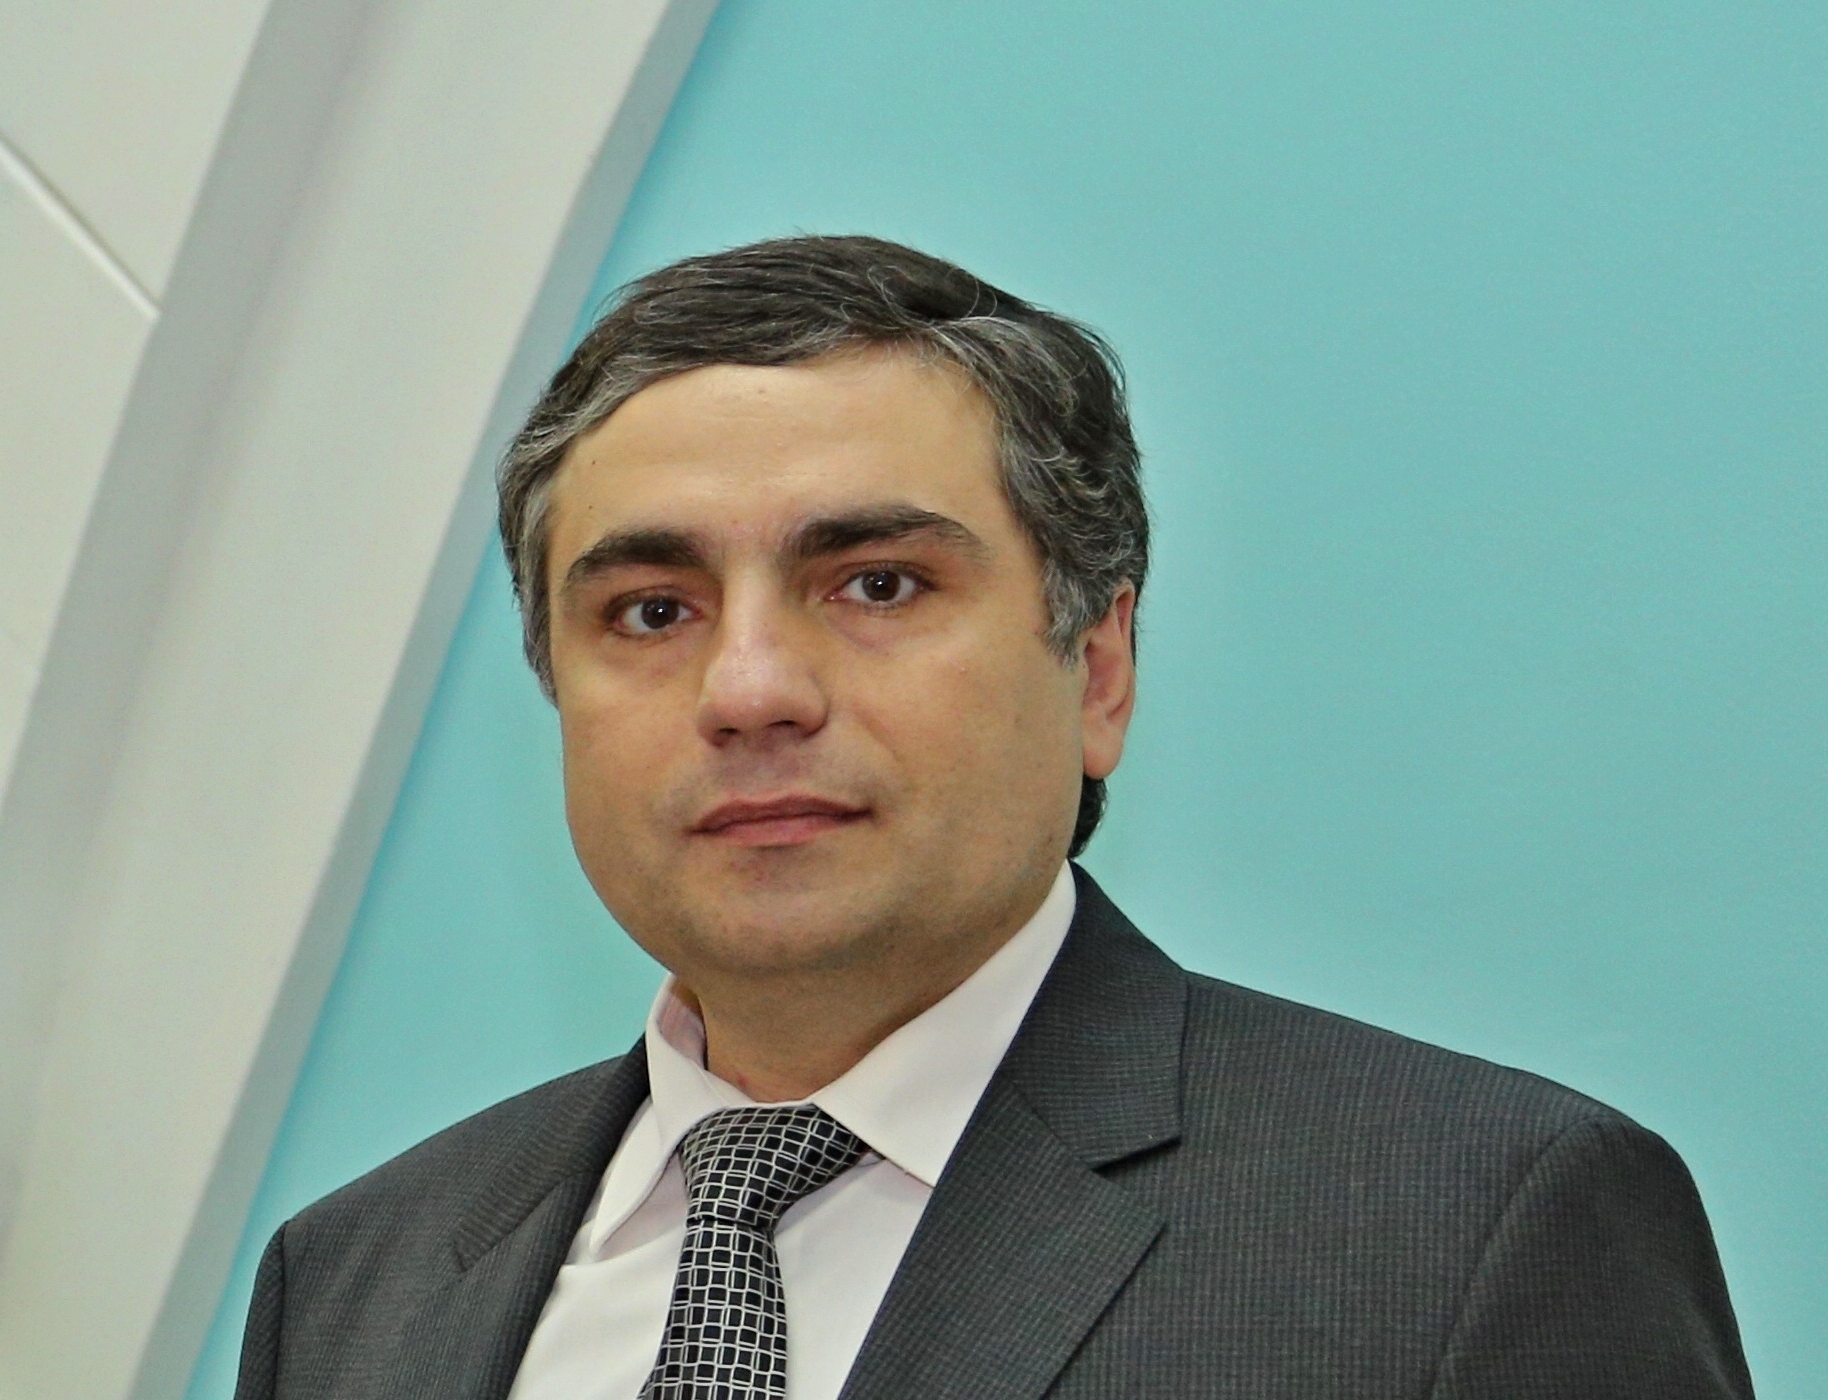 Губернатор Дмитрий Азаров назначил Виктора Акопьяна министром образования Самарской области